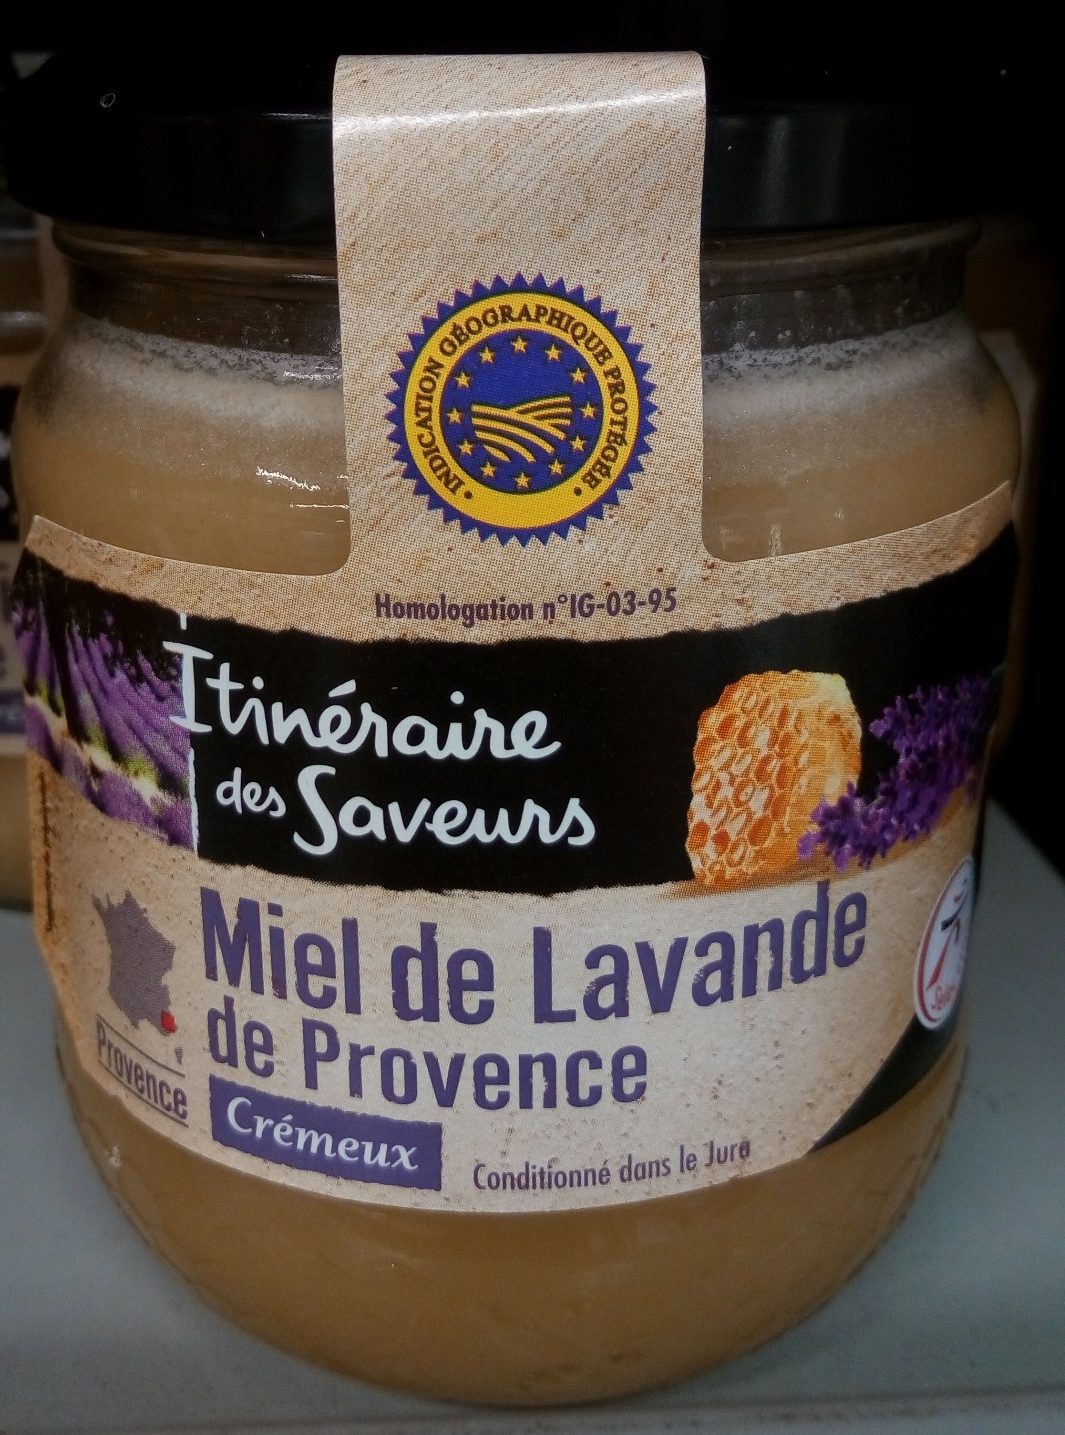 Miel de Lavande de Provence Crémeux - Product - fr